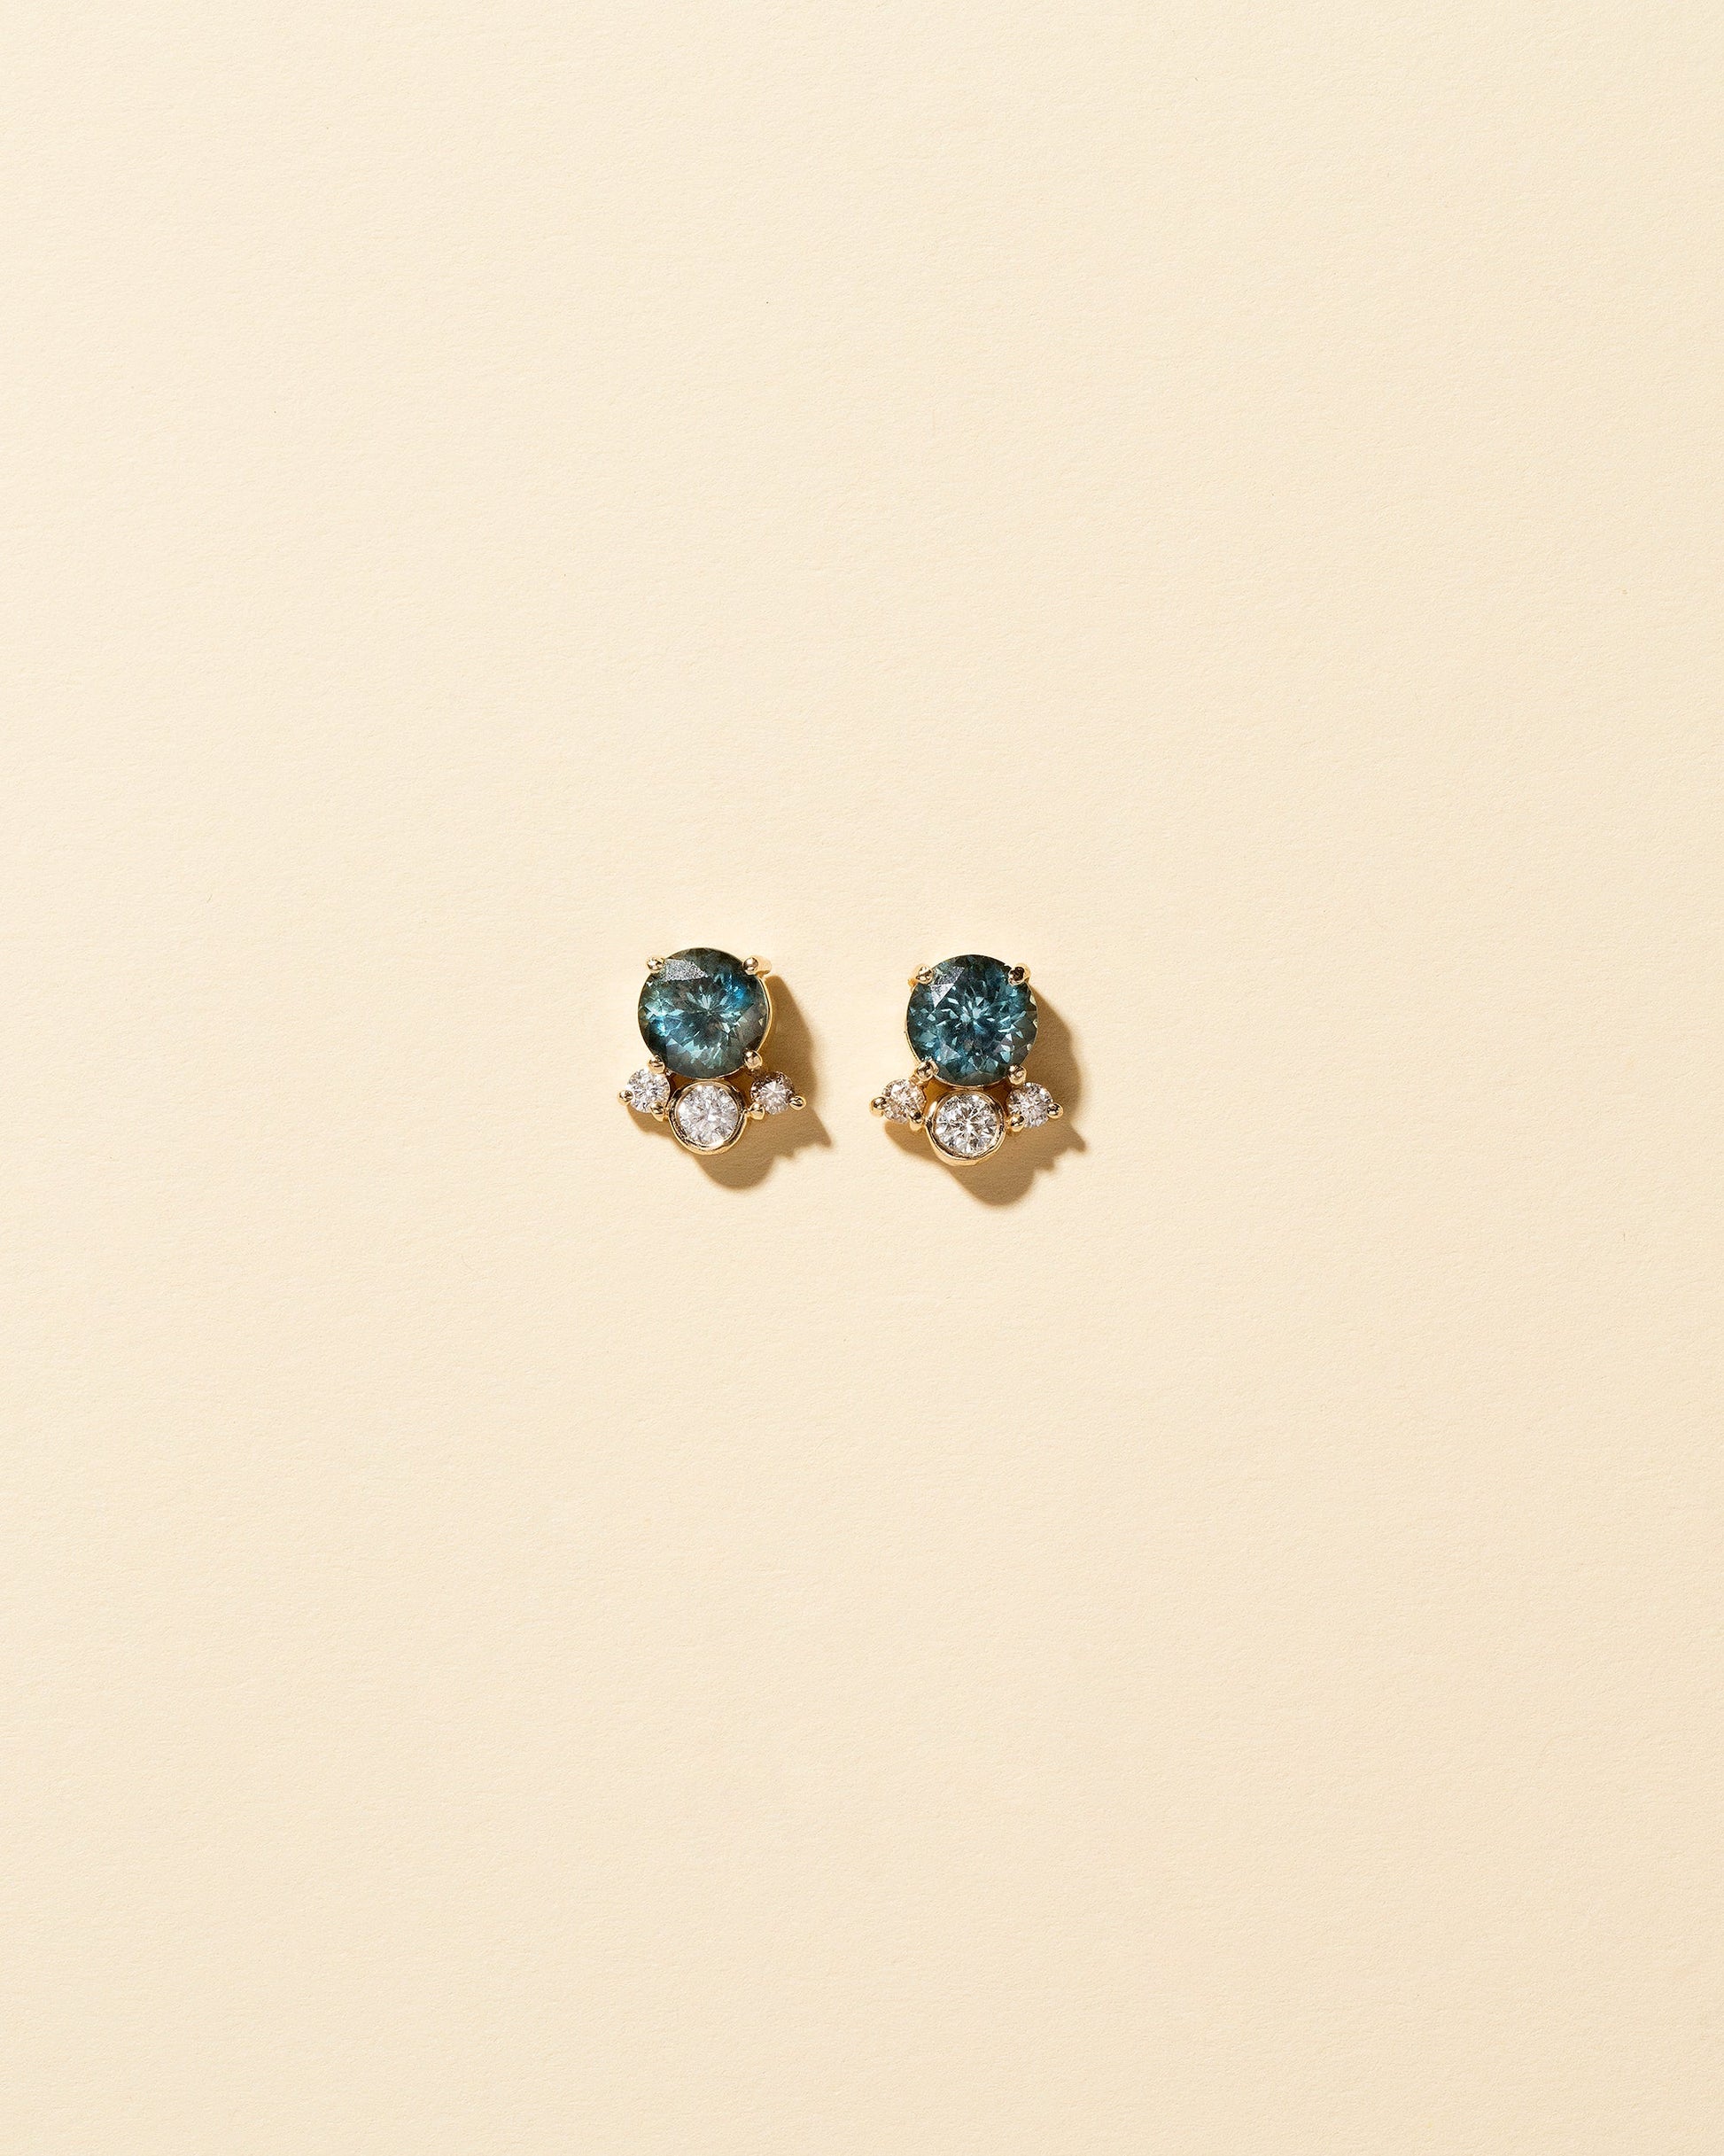  Vega Earrings - Blue Sapphire on light color background.